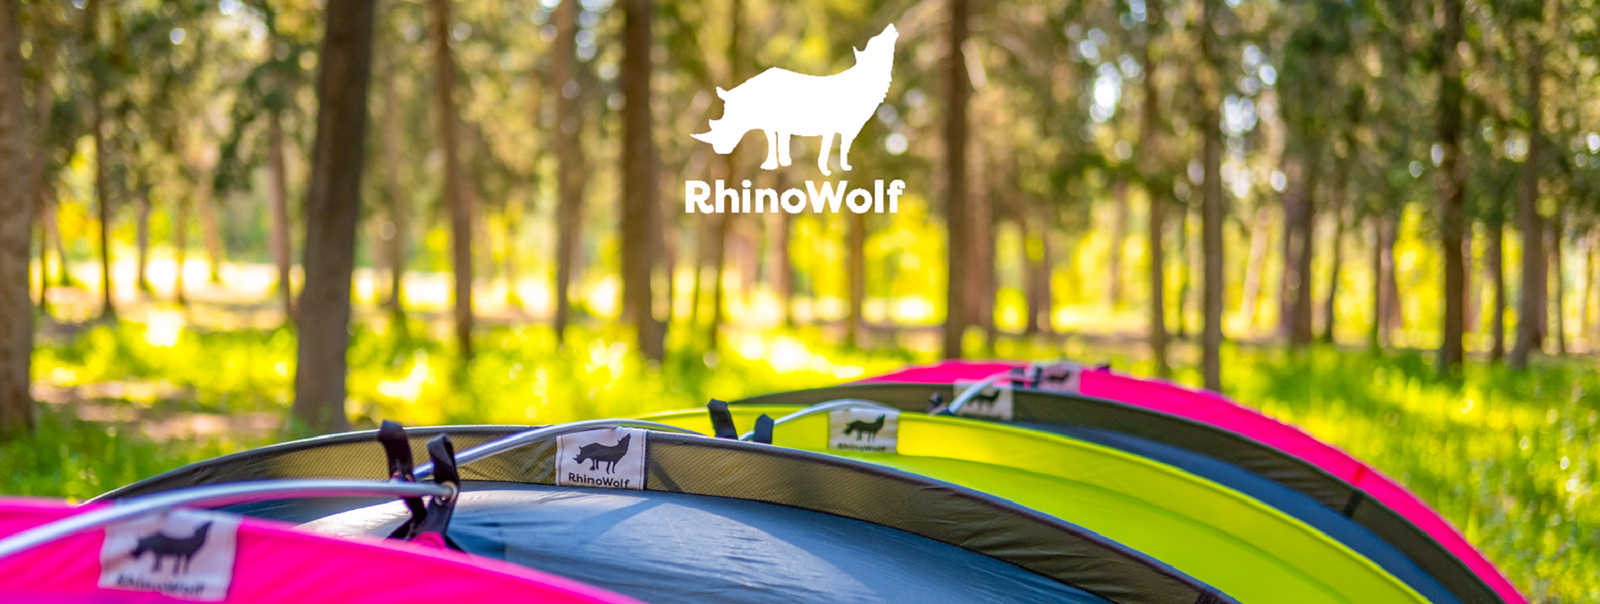 RhinoWolf 2.0